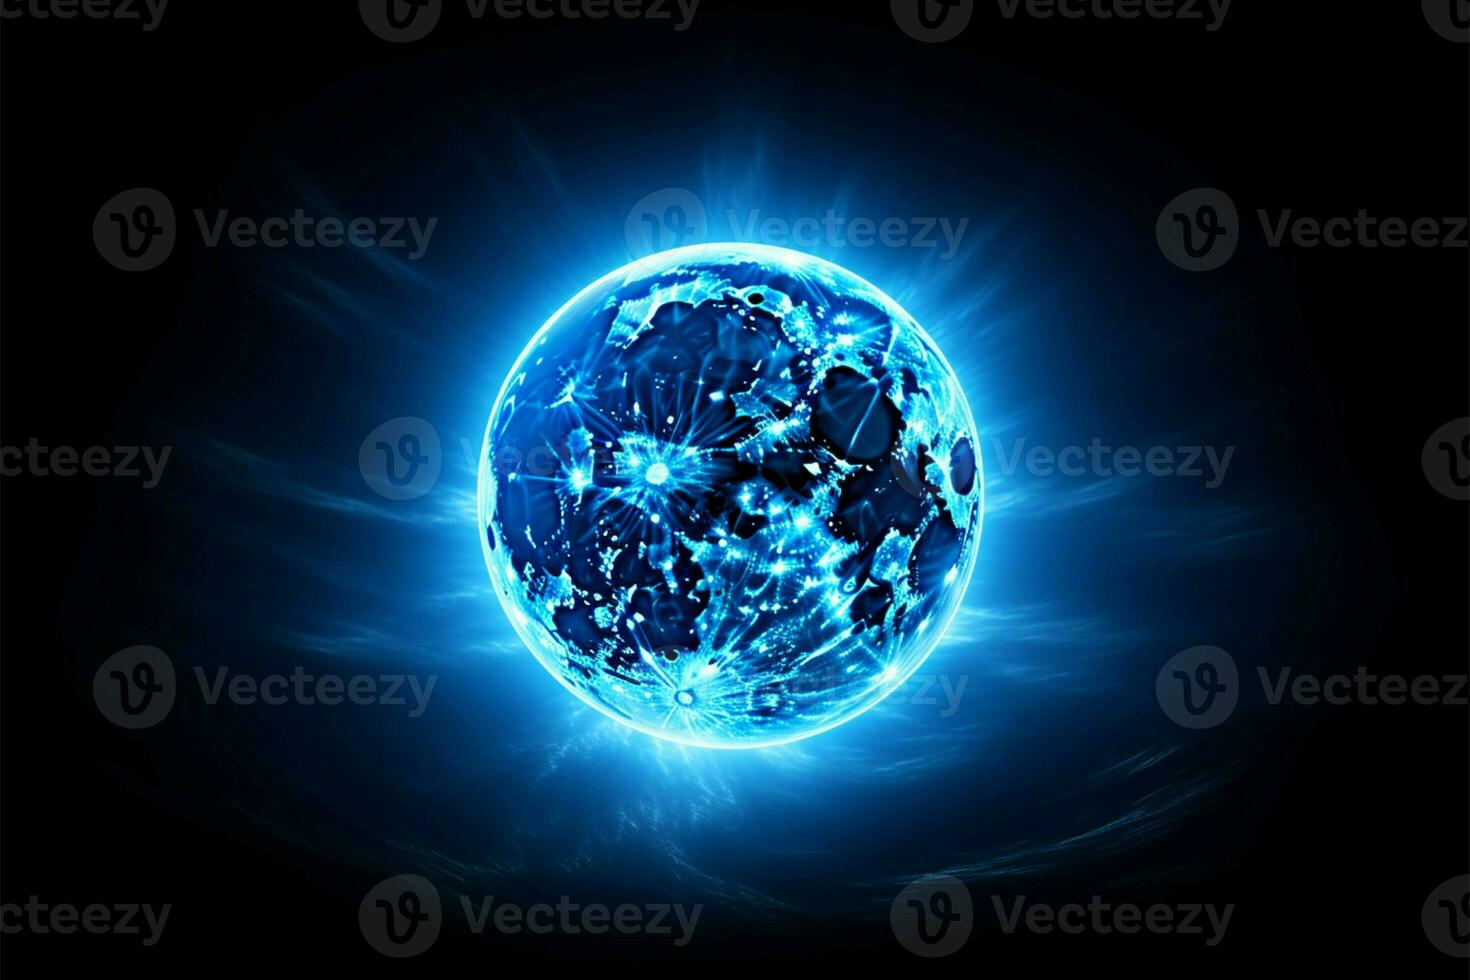 etéreo azul super lua irradia com uma celestial aréola sozinho ai gerado foto